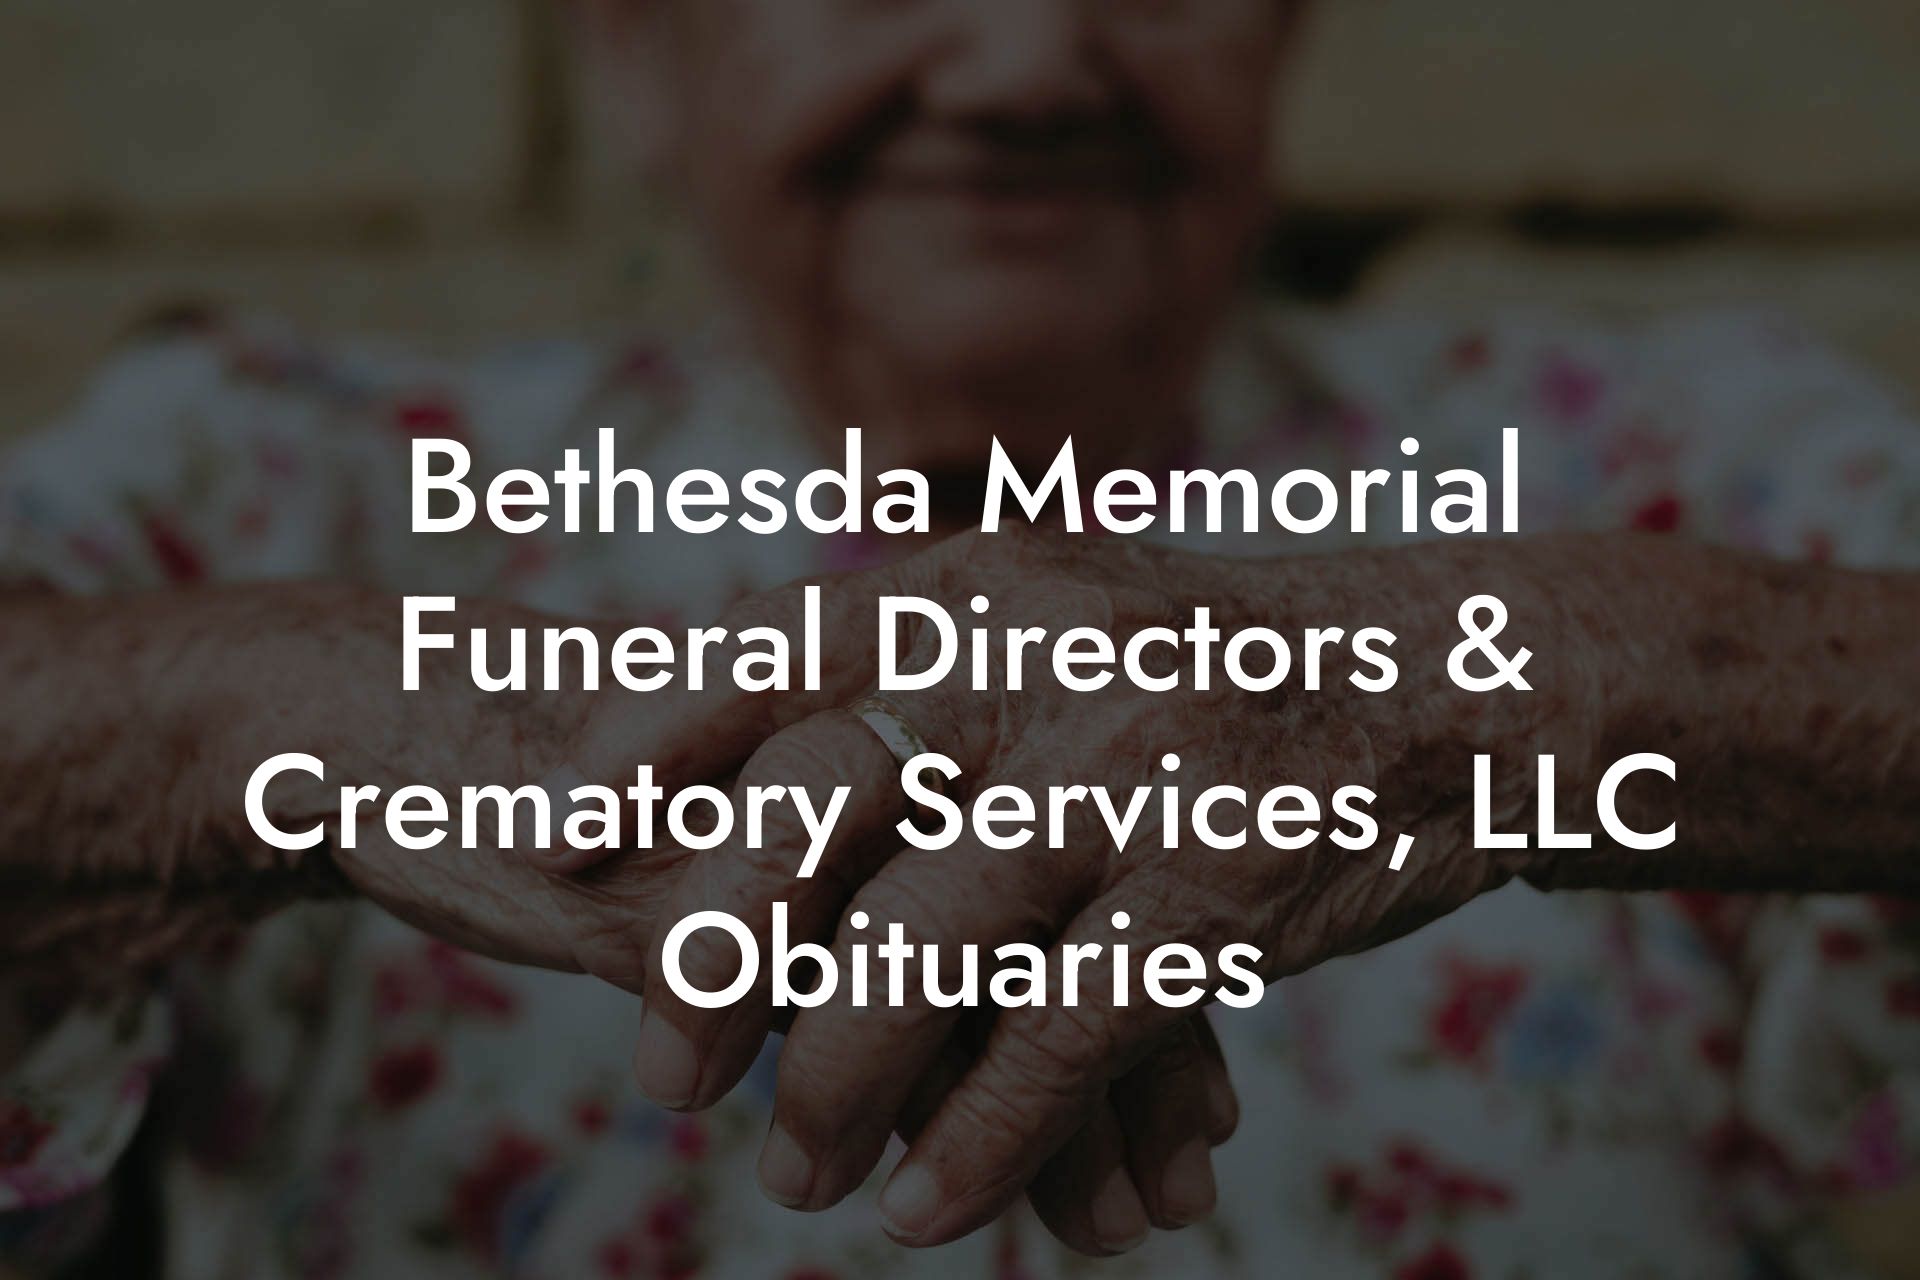 Bethesda Memorial Funeral Directors & Crematory Services, LLC Obituaries